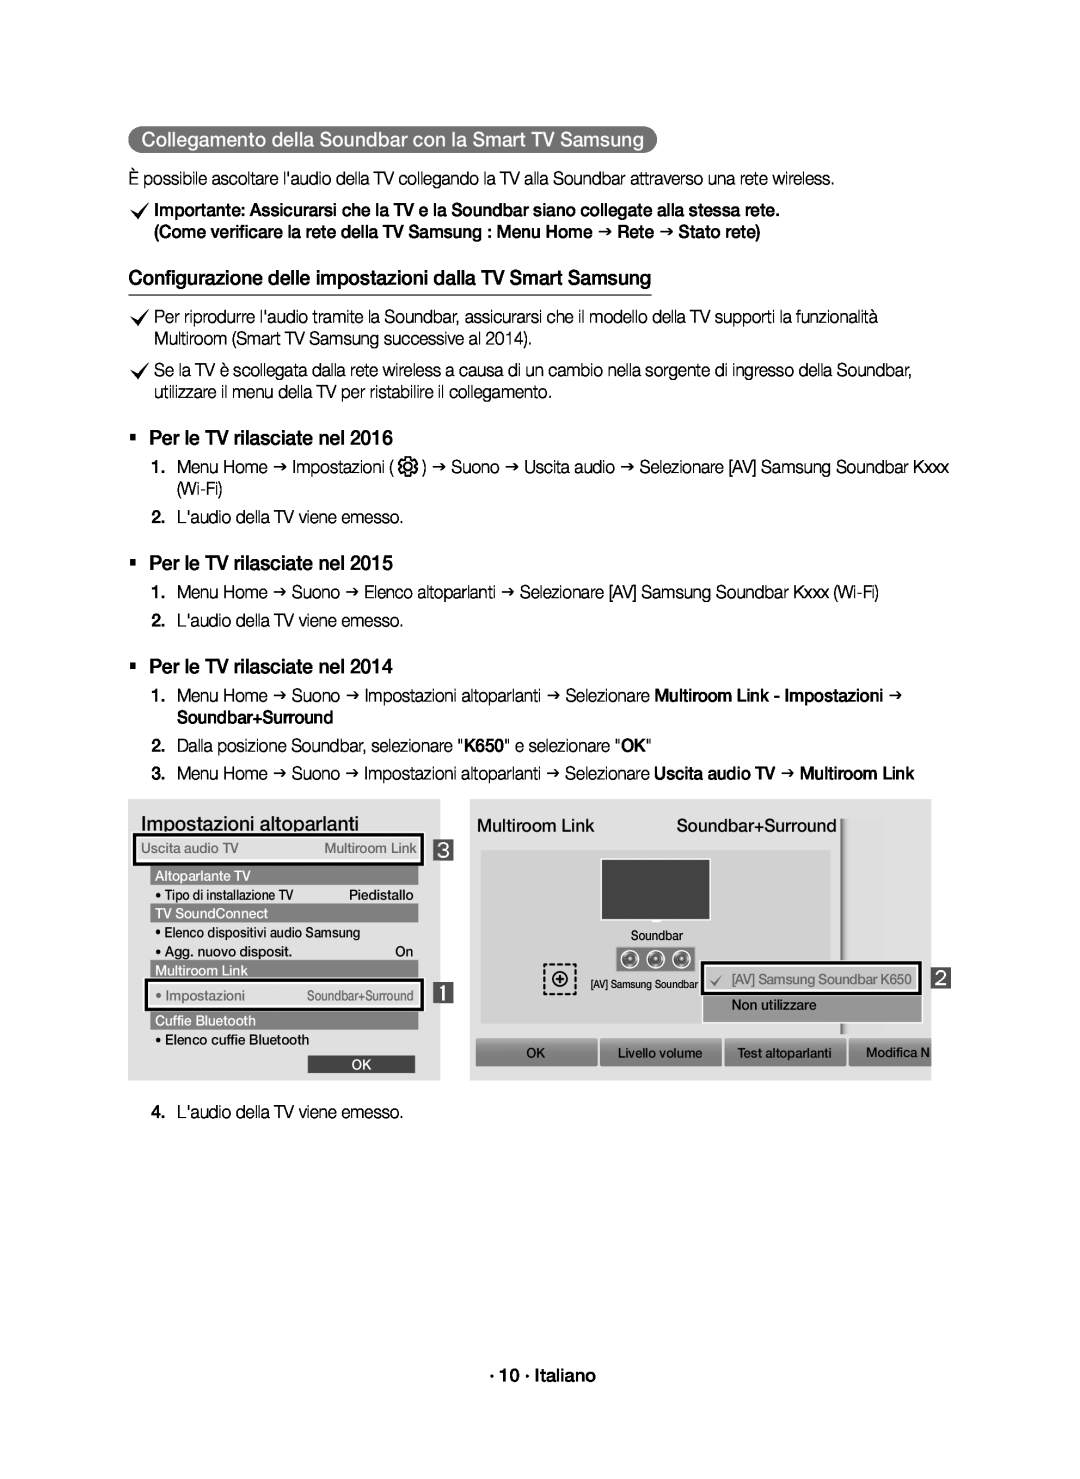 Samsung HW-K651/ZF, HW-K650/ZF manual Collegamento della Soundbar con la Smart TV Samsung,  Per le TV rilasciate nel 